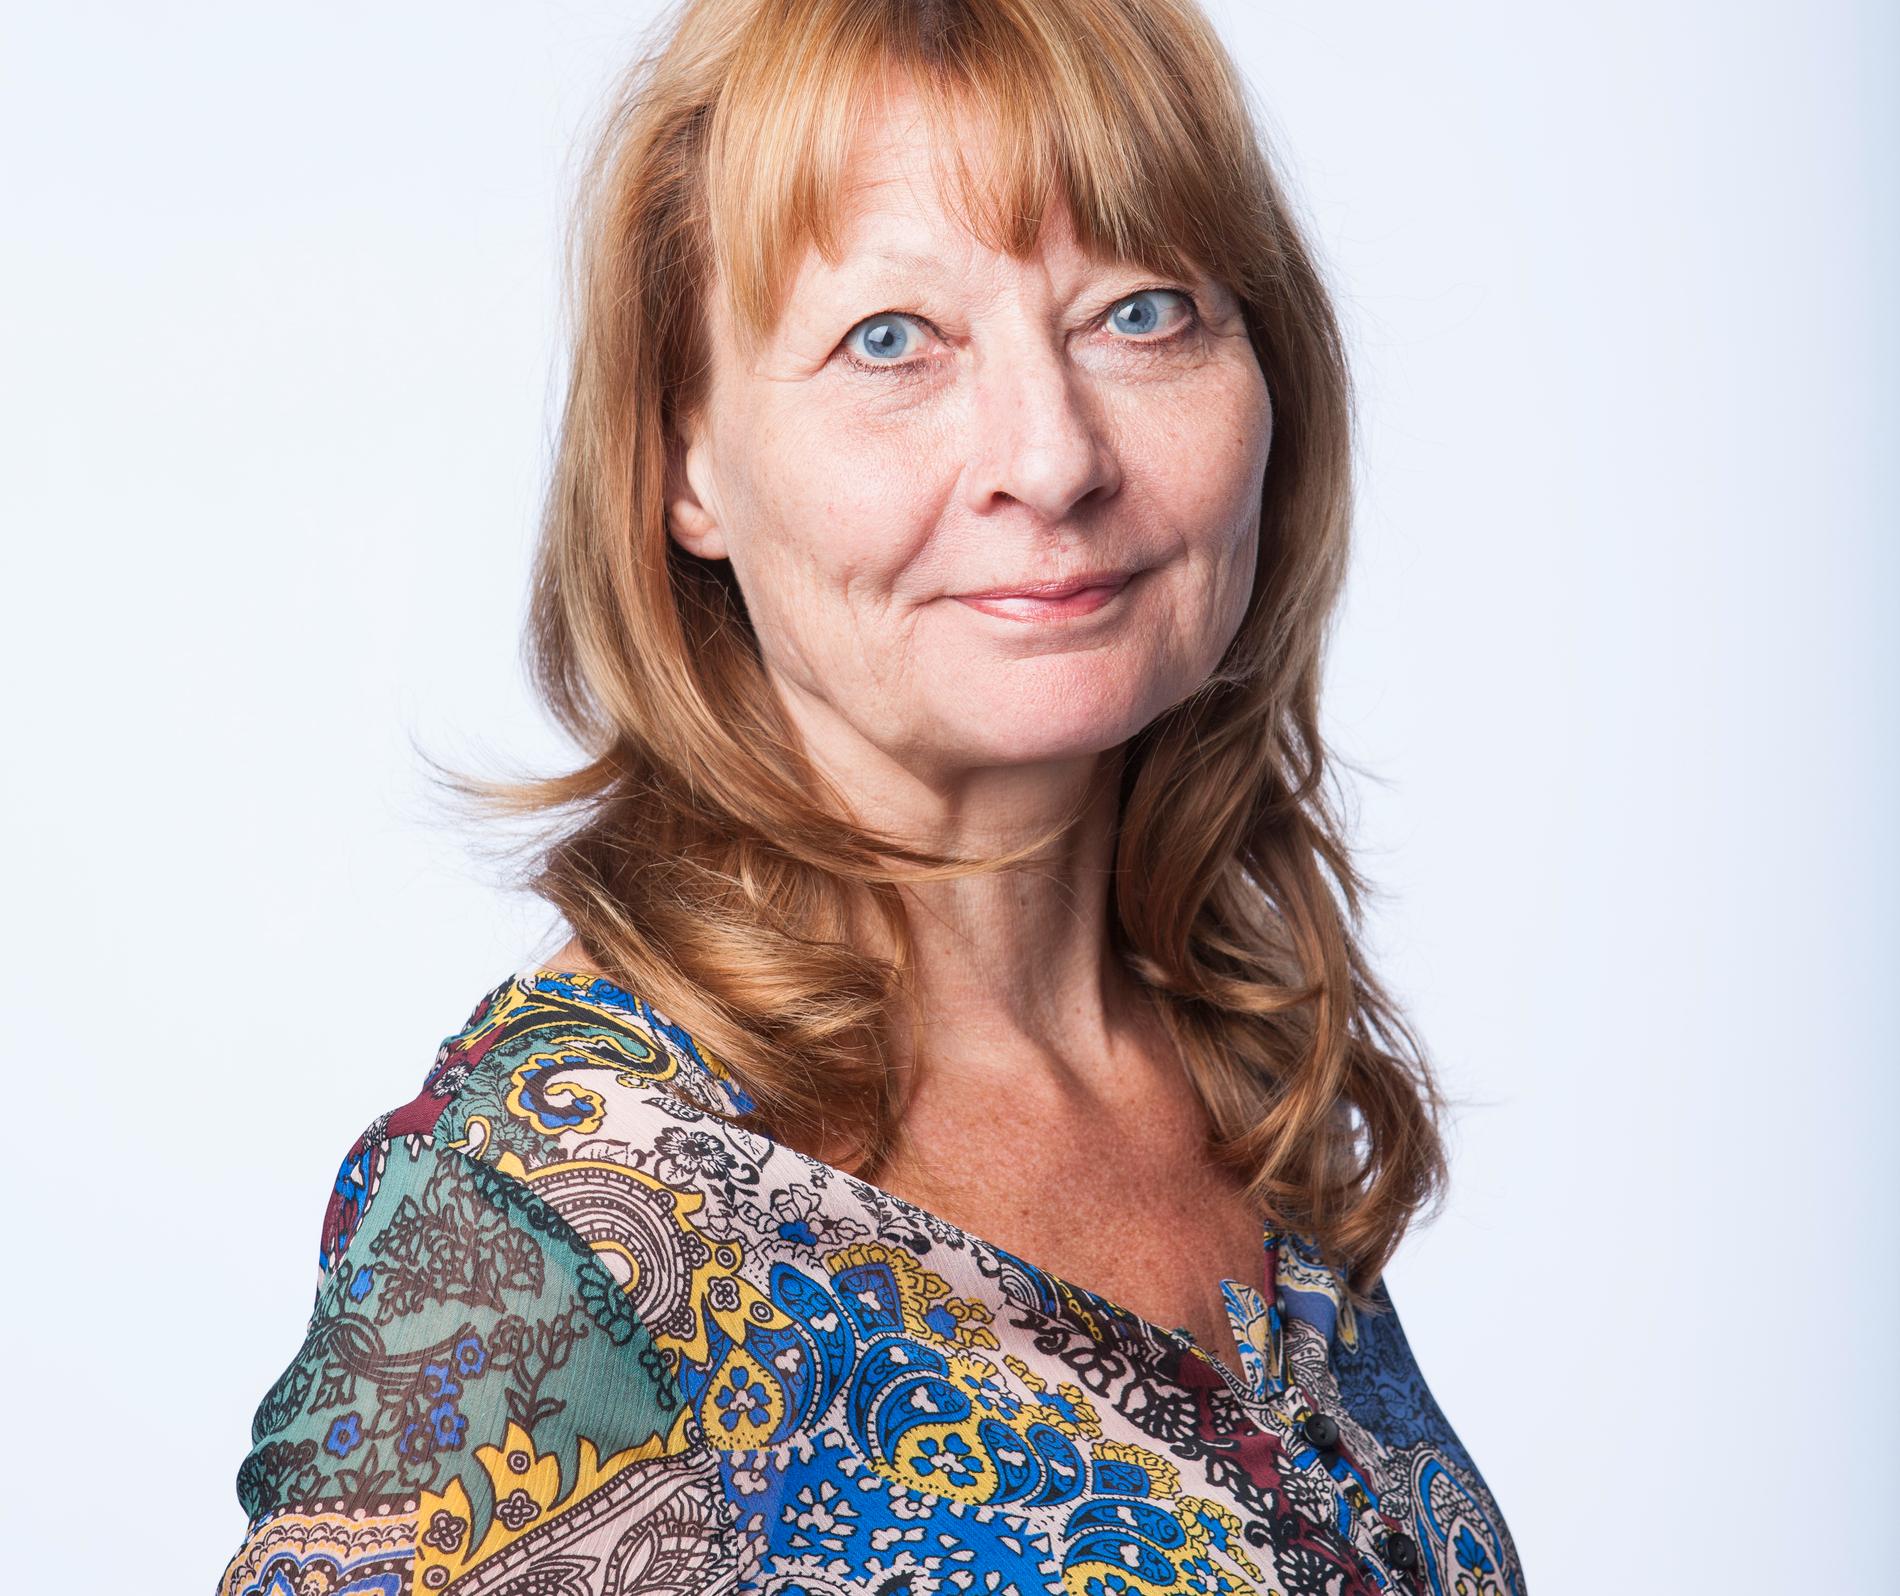 Kerstin Weigl har jobbat på Aftonbladet i många år. Hon var med och startade och drev den mångåriga granskningen Dödade kvinnor och har även granskat de gömda kvinnorna och barnen.